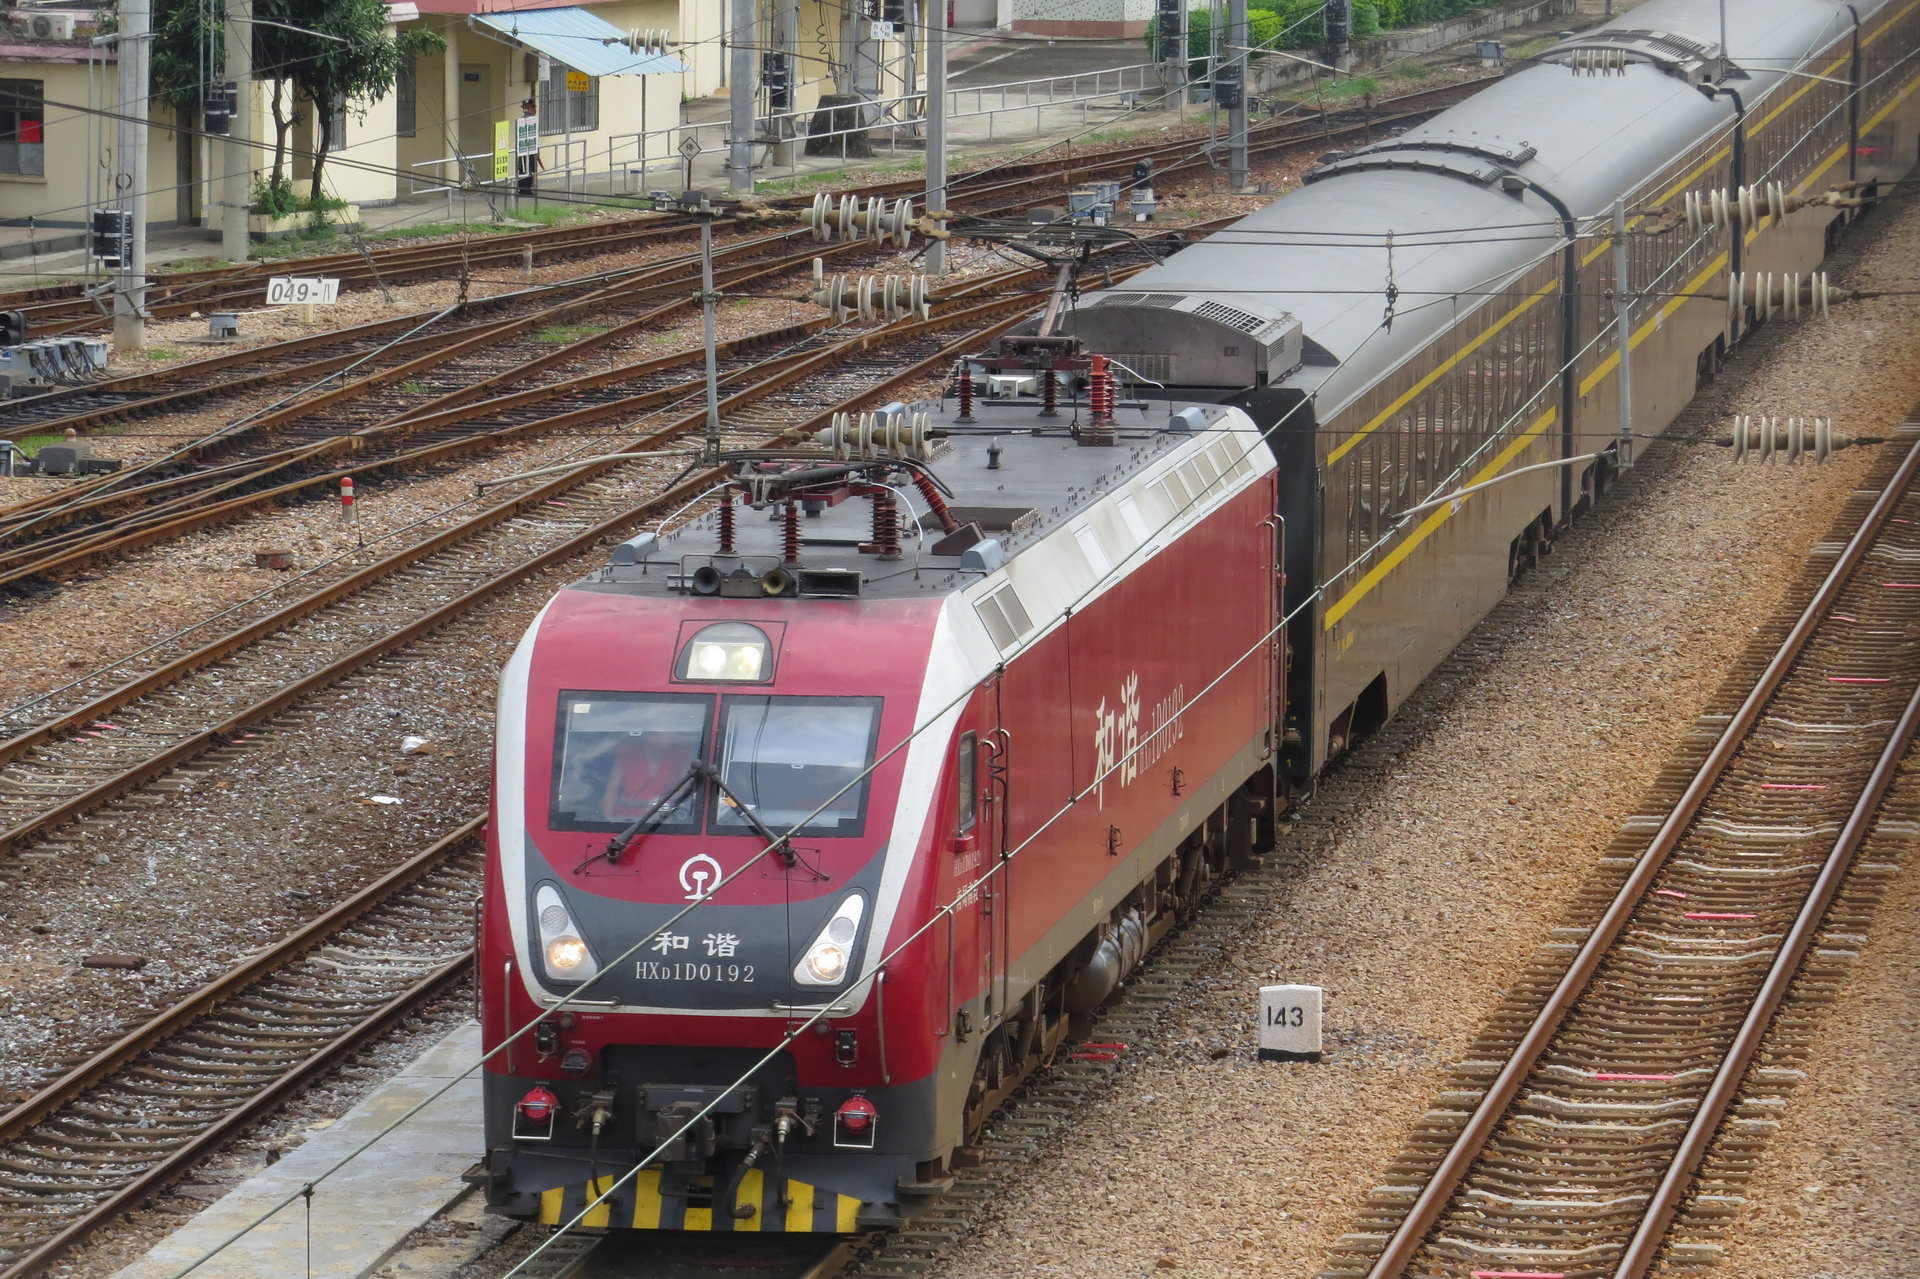 和諧1D型0192號機車牽引Z108次列車通過筍崗站